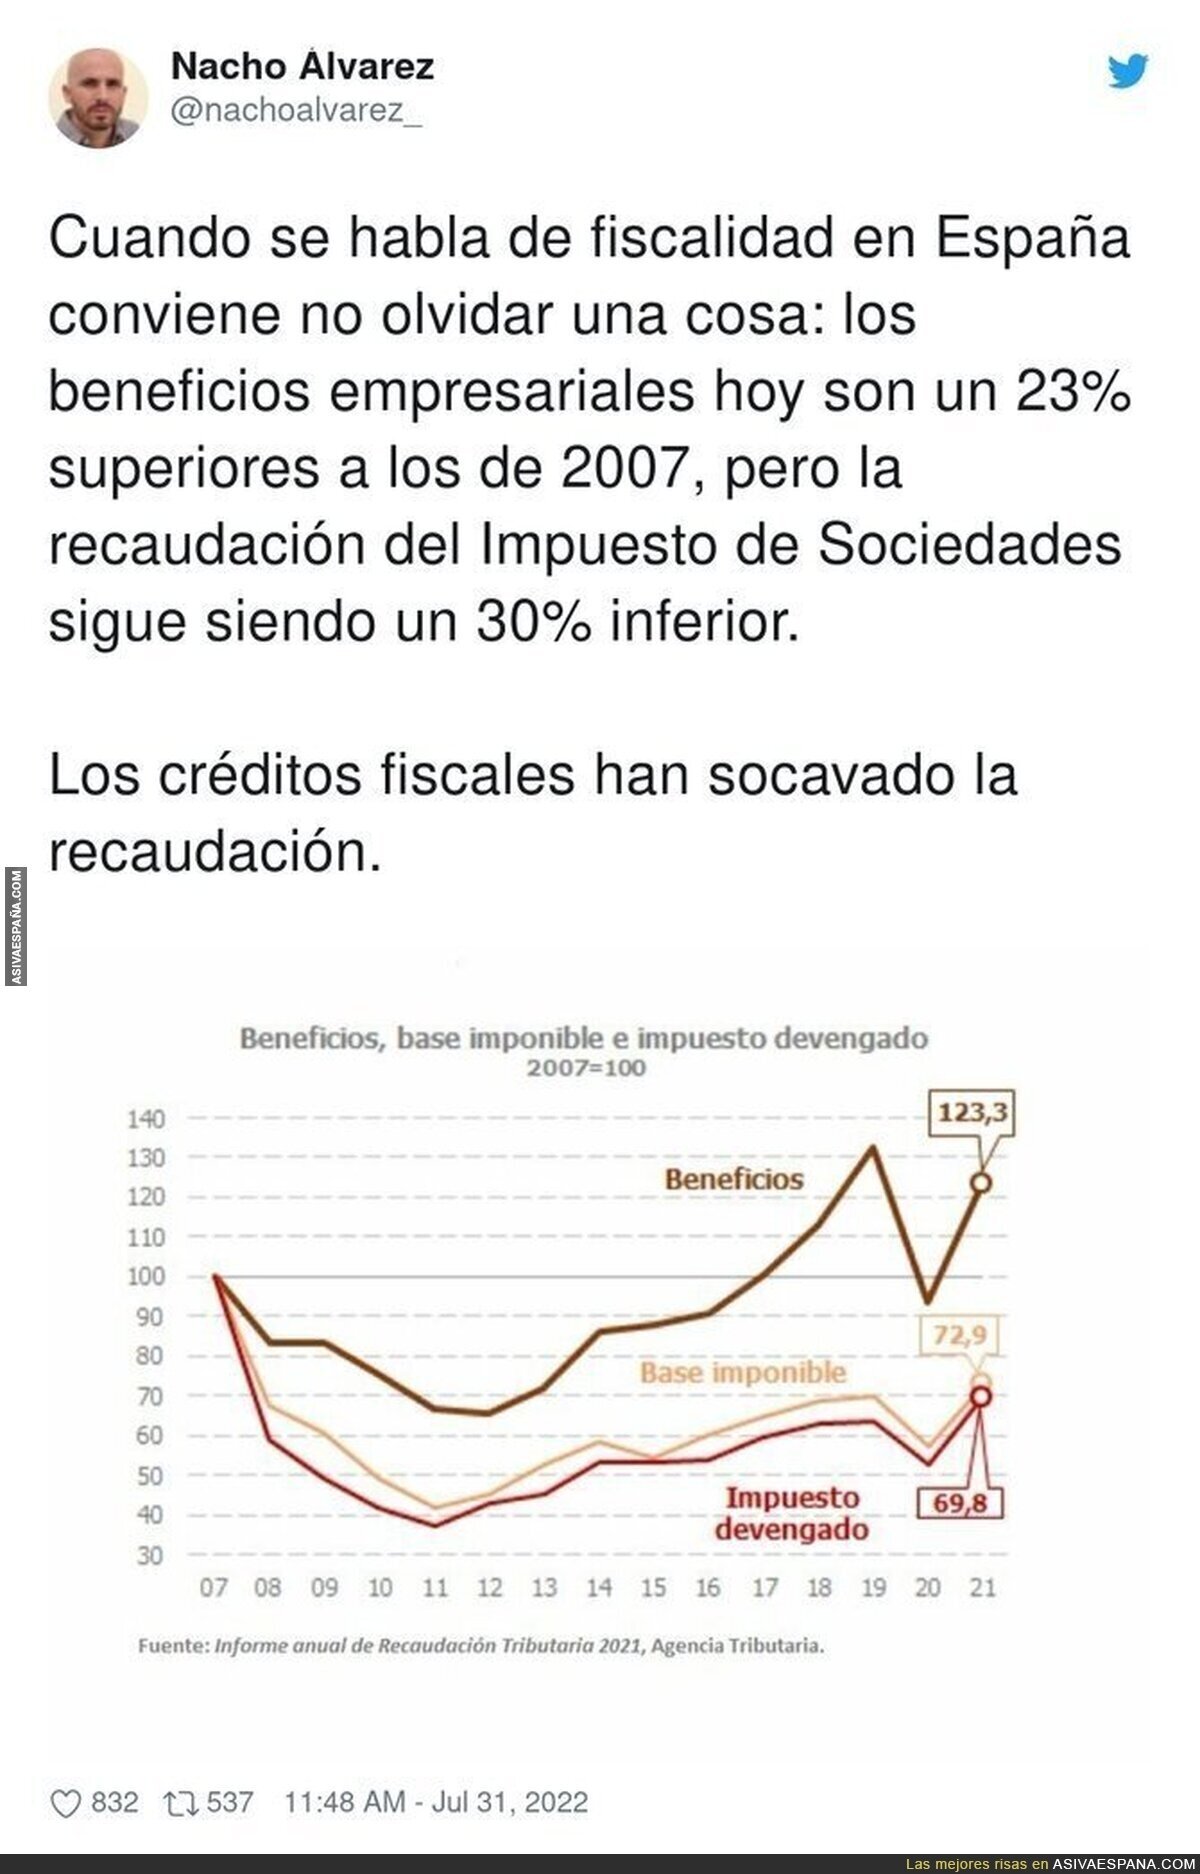 Detalles sobre la fiscalidad en España